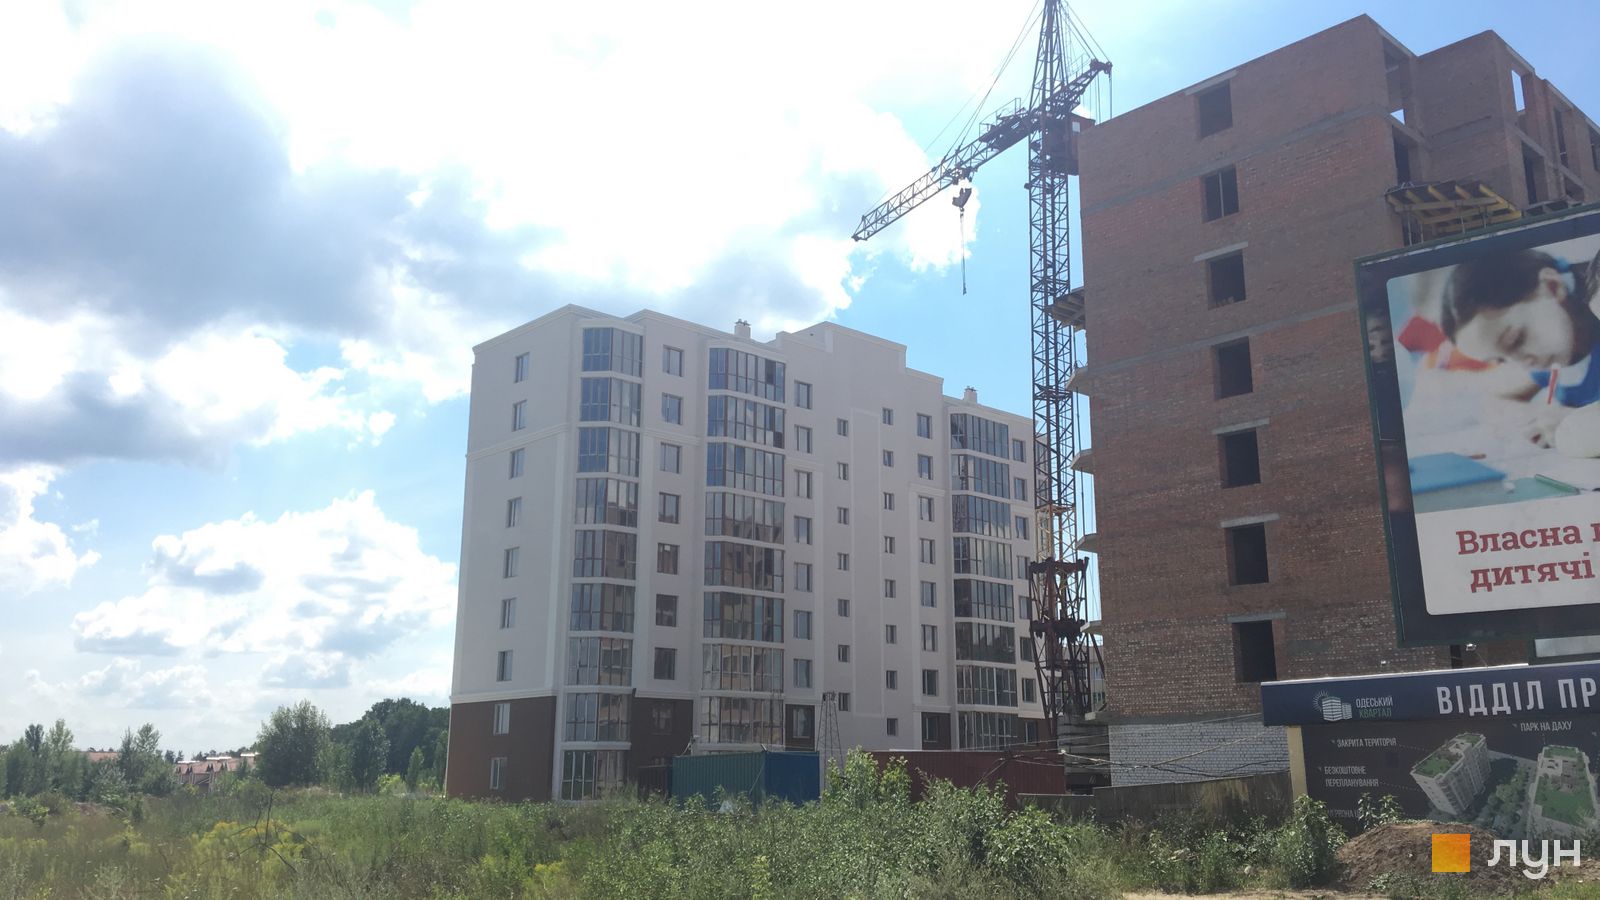 Моніторинг будівництва ЖК Одеський квартал - Ракурс 2, липень 2018